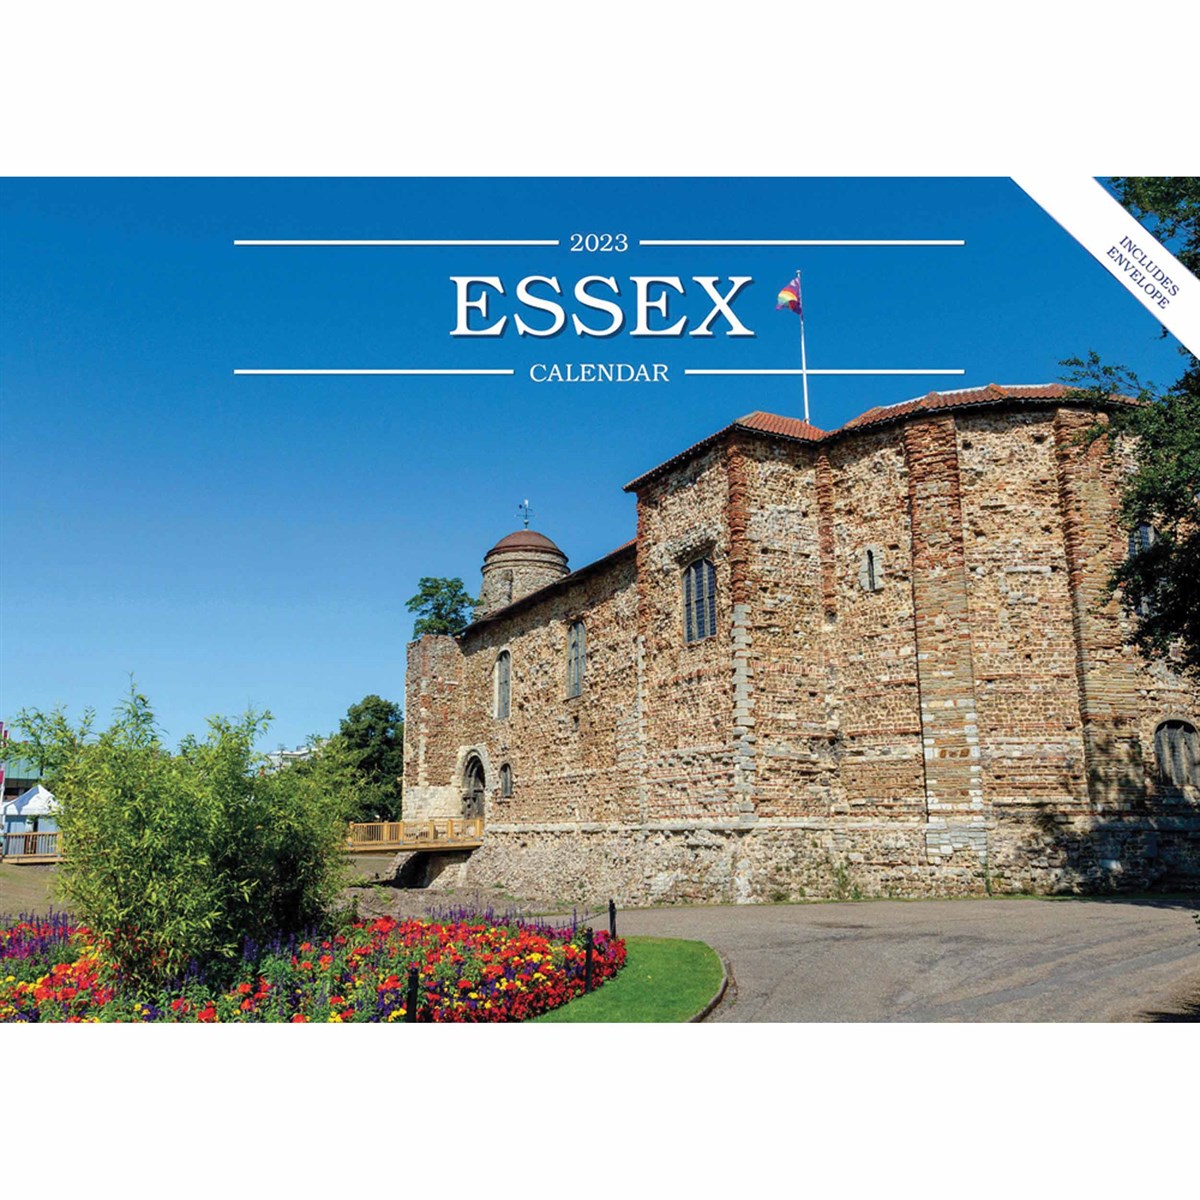 Essex A5 2023 Calendars